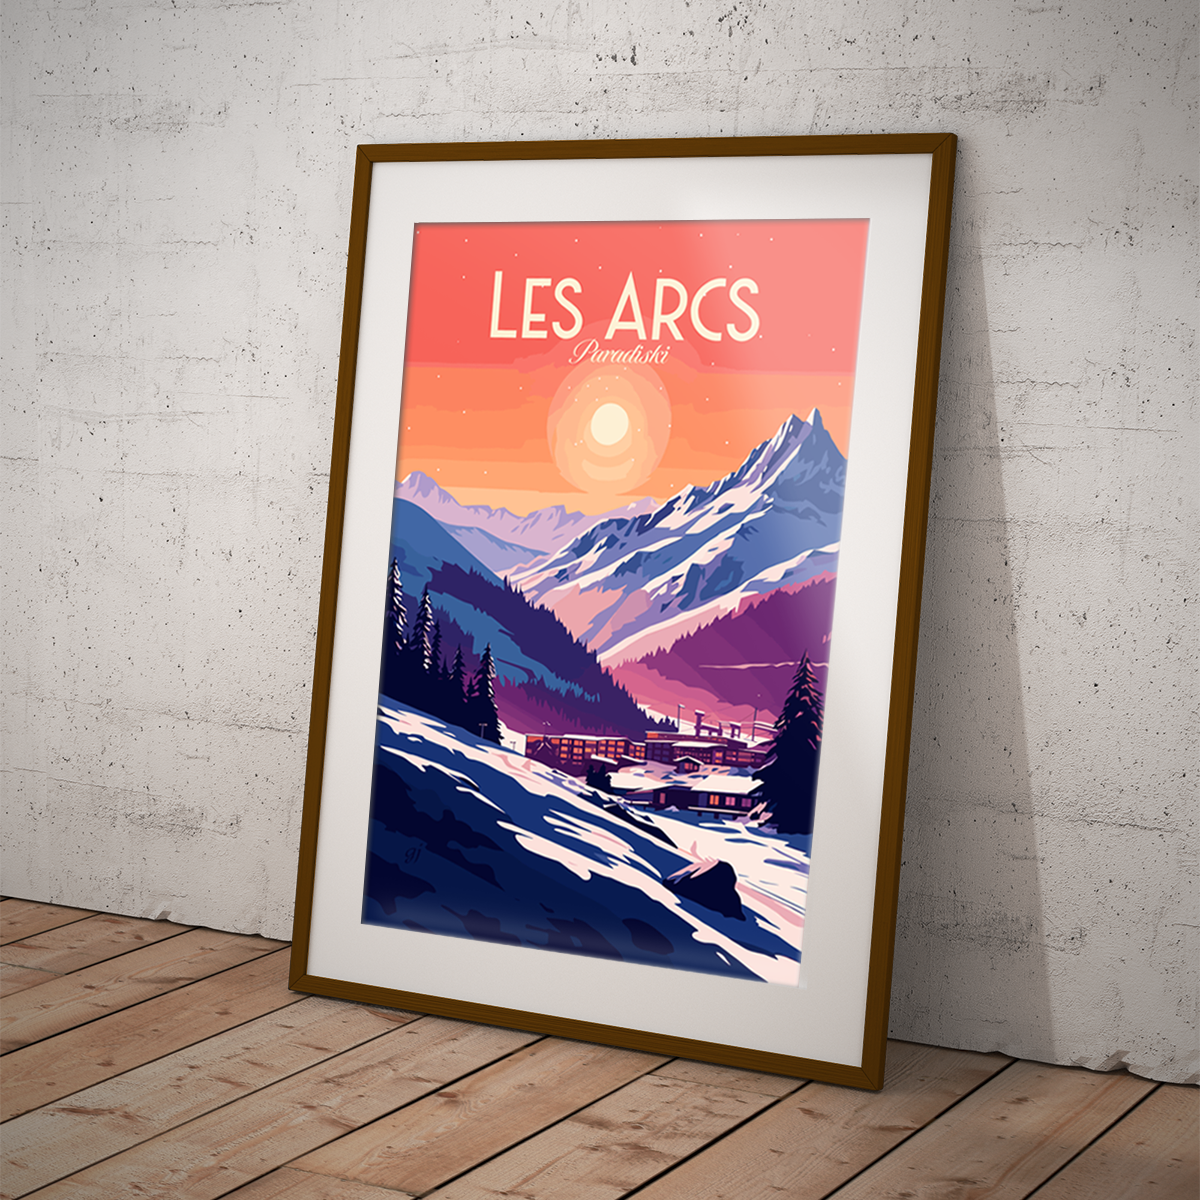 Les Arcs poster by bon voyage design